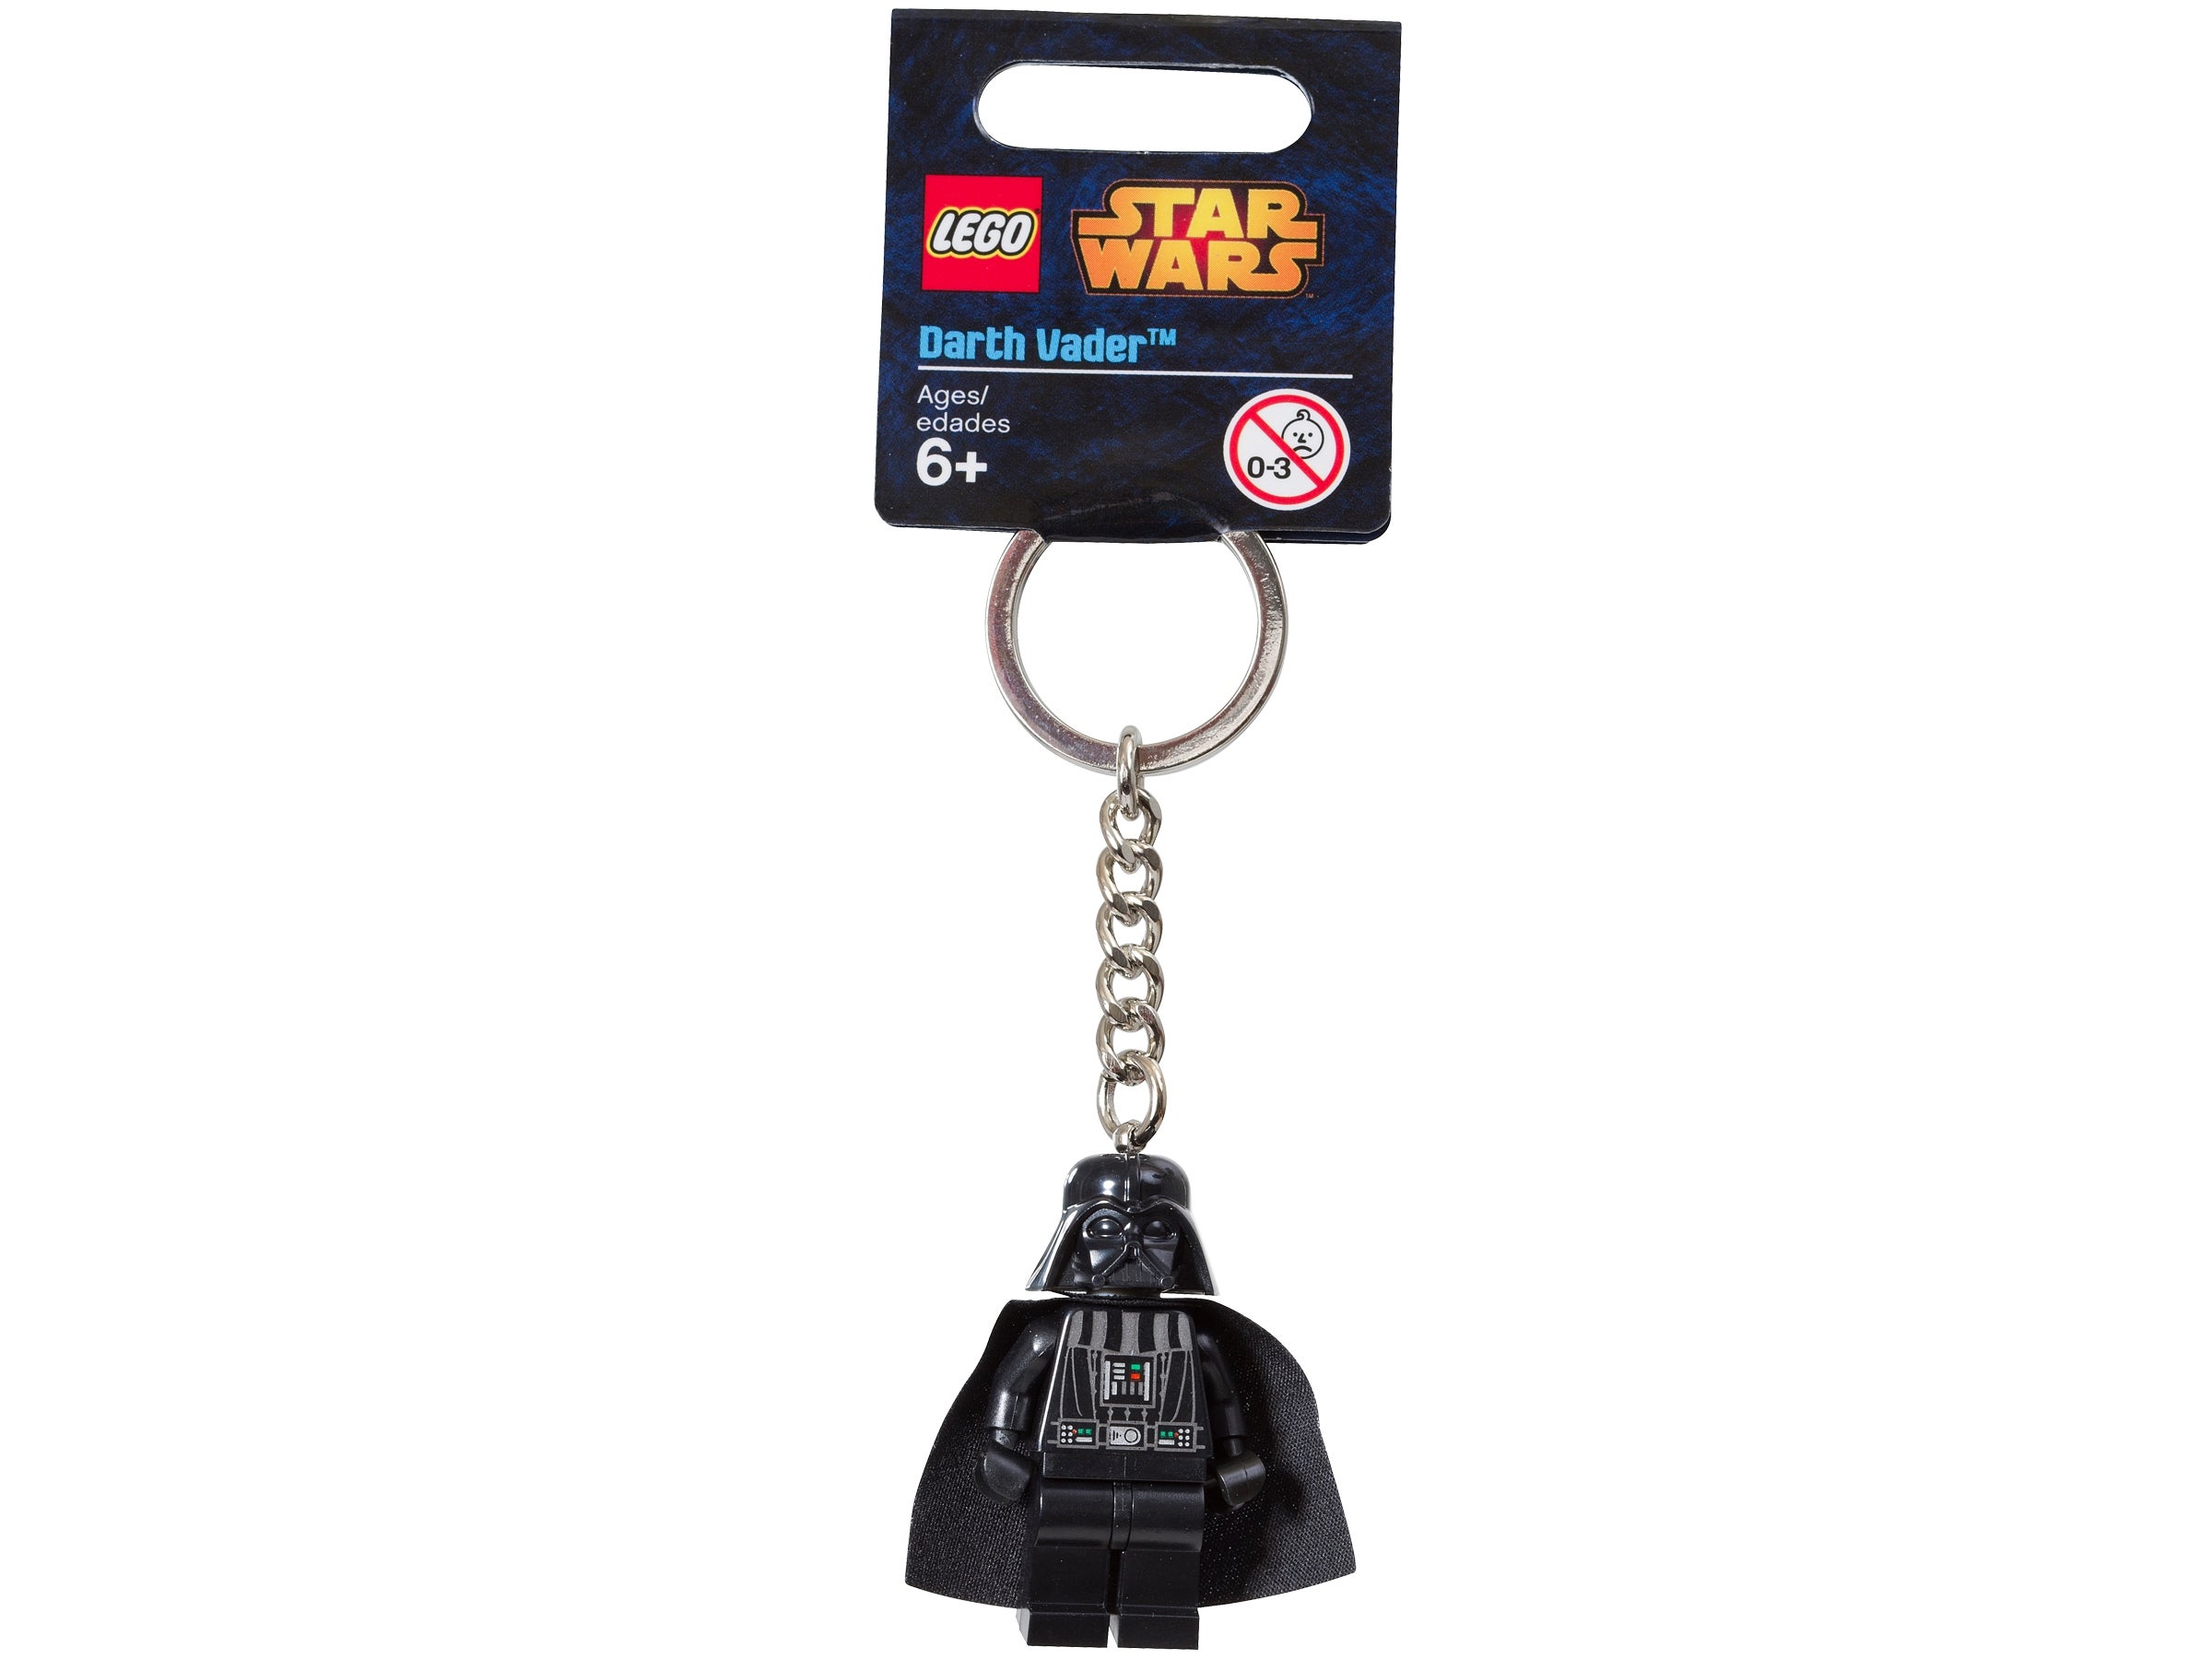 LEGO Star Wars Darth Vader Keyring retired 850996 new